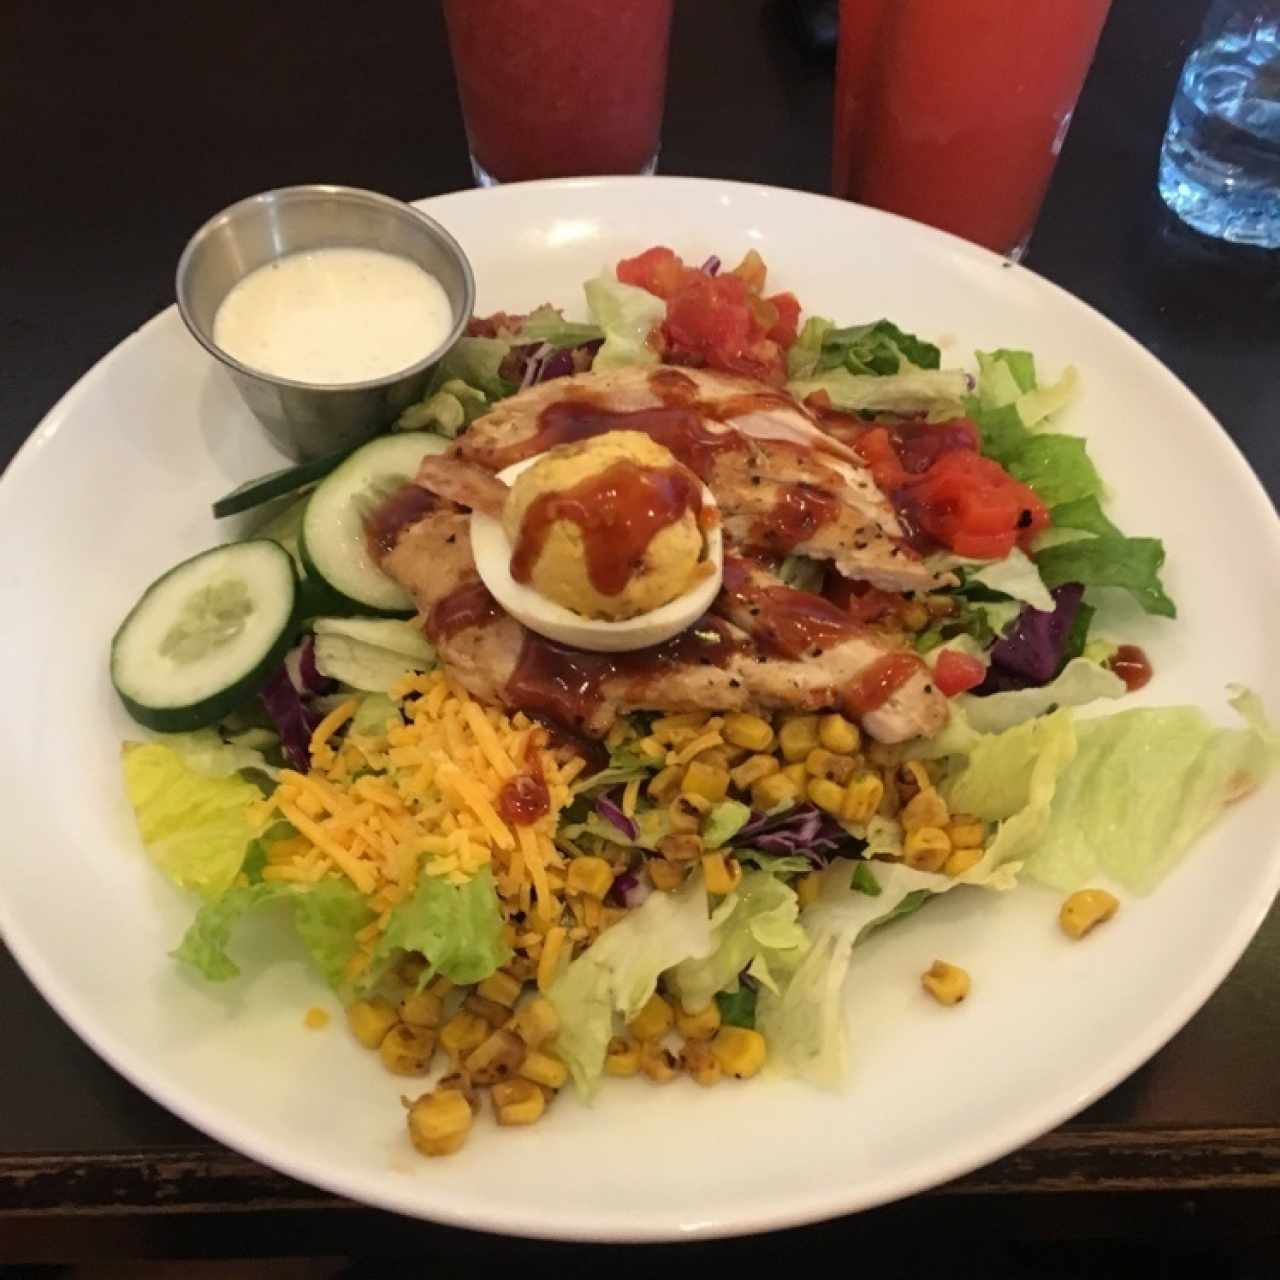 BBQ chicken cobb salad